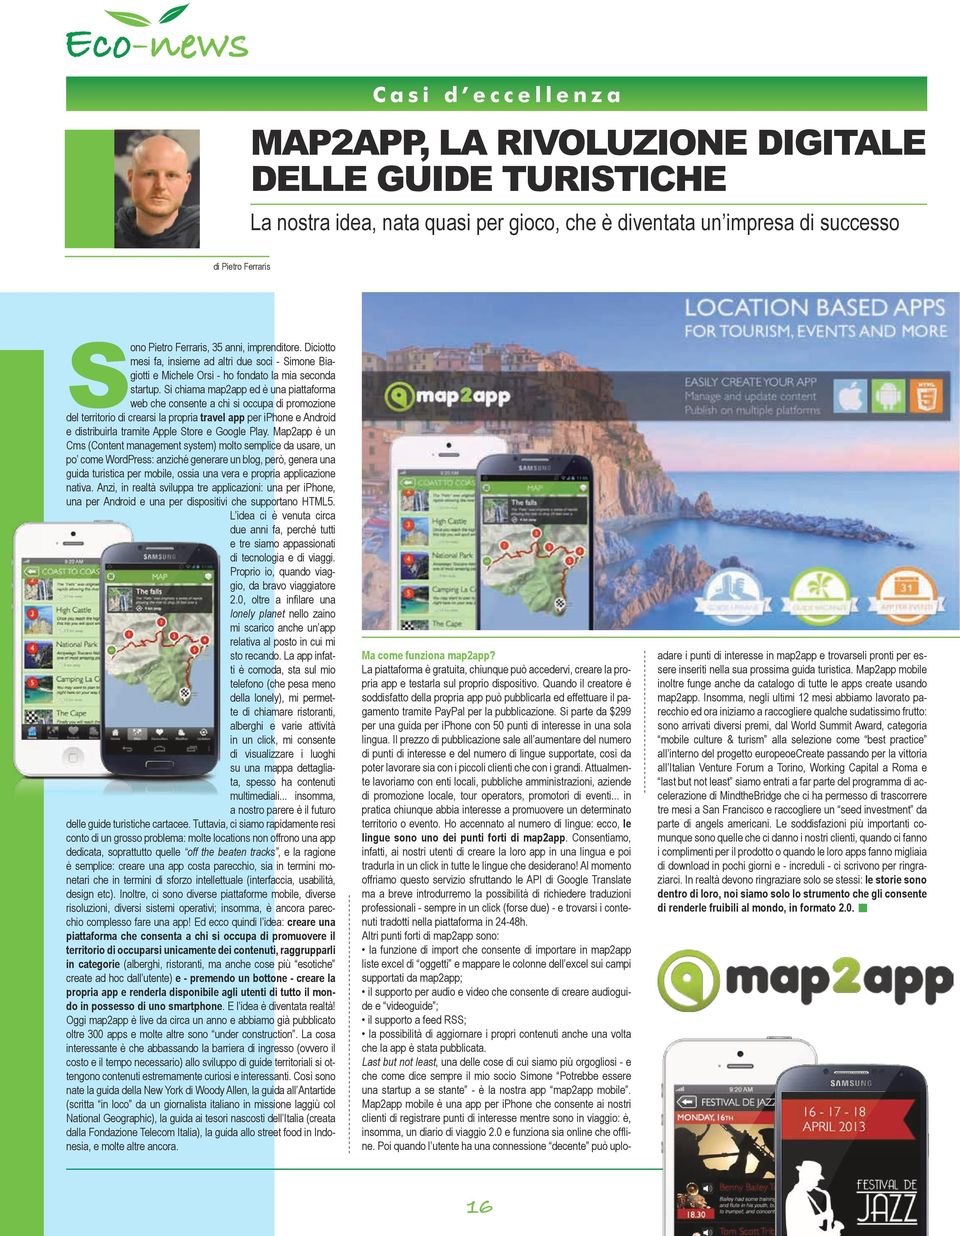 Si chiama map2app ed è una piattaforma web che consente a chi si occupa di promozione del territorio di crearsi la propria travel app per iphone e Android e distribuirla tramite Apple Store e Google